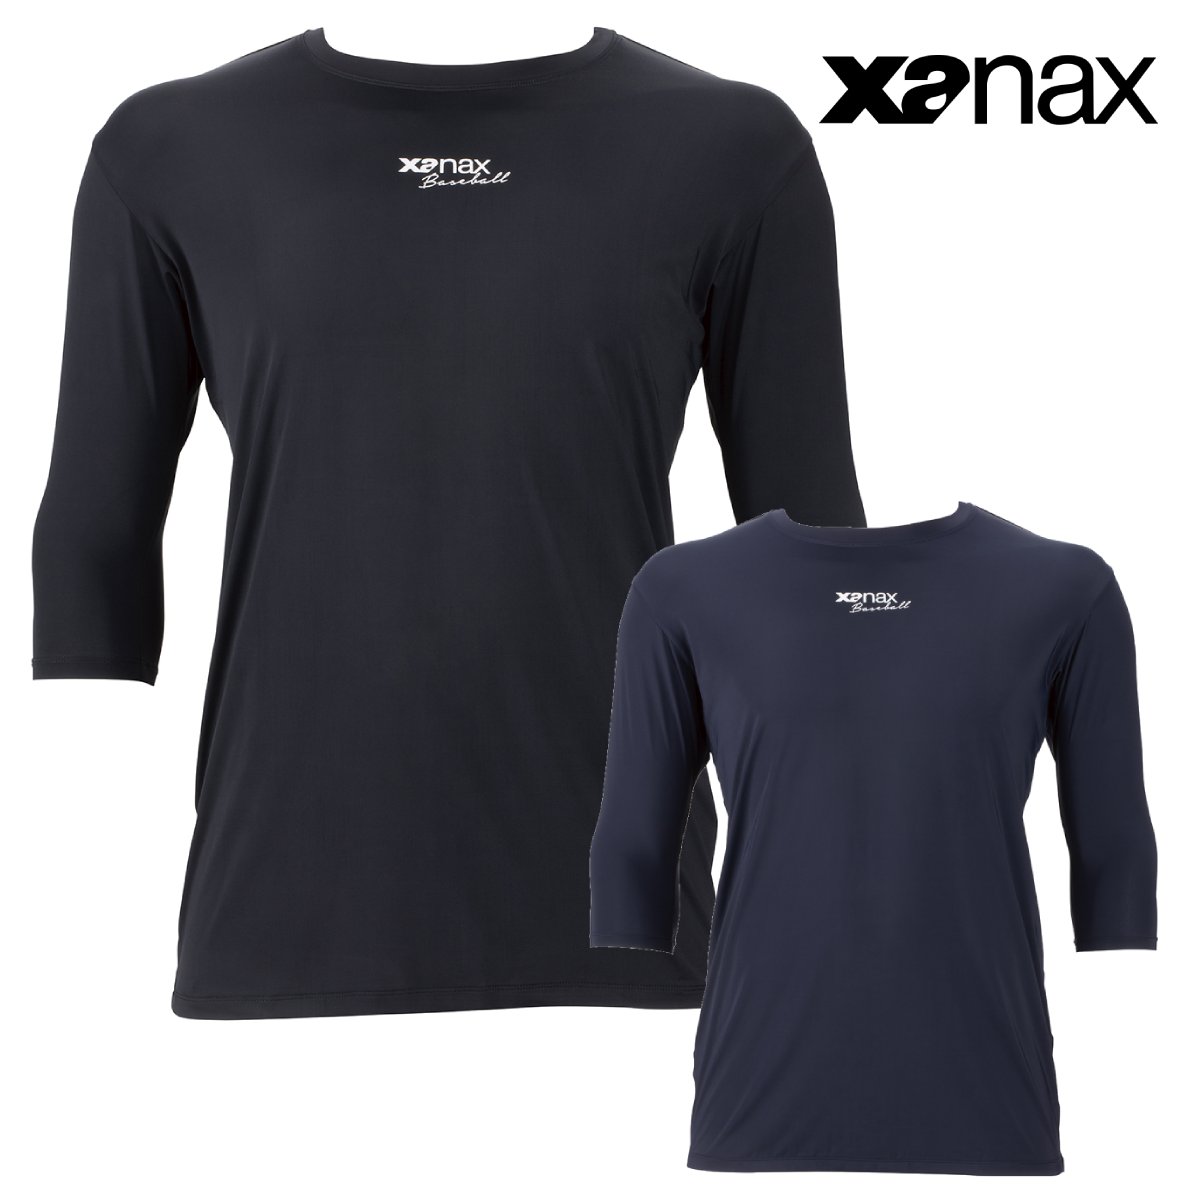 ザナックス コンプリート アンダーシャツ 2 ローネック 七分袖 メンズ BUS772 野球 吸汗速乾 接触冷感 ひんやり感が10%UP! XANAX 送料無料 あす楽対応